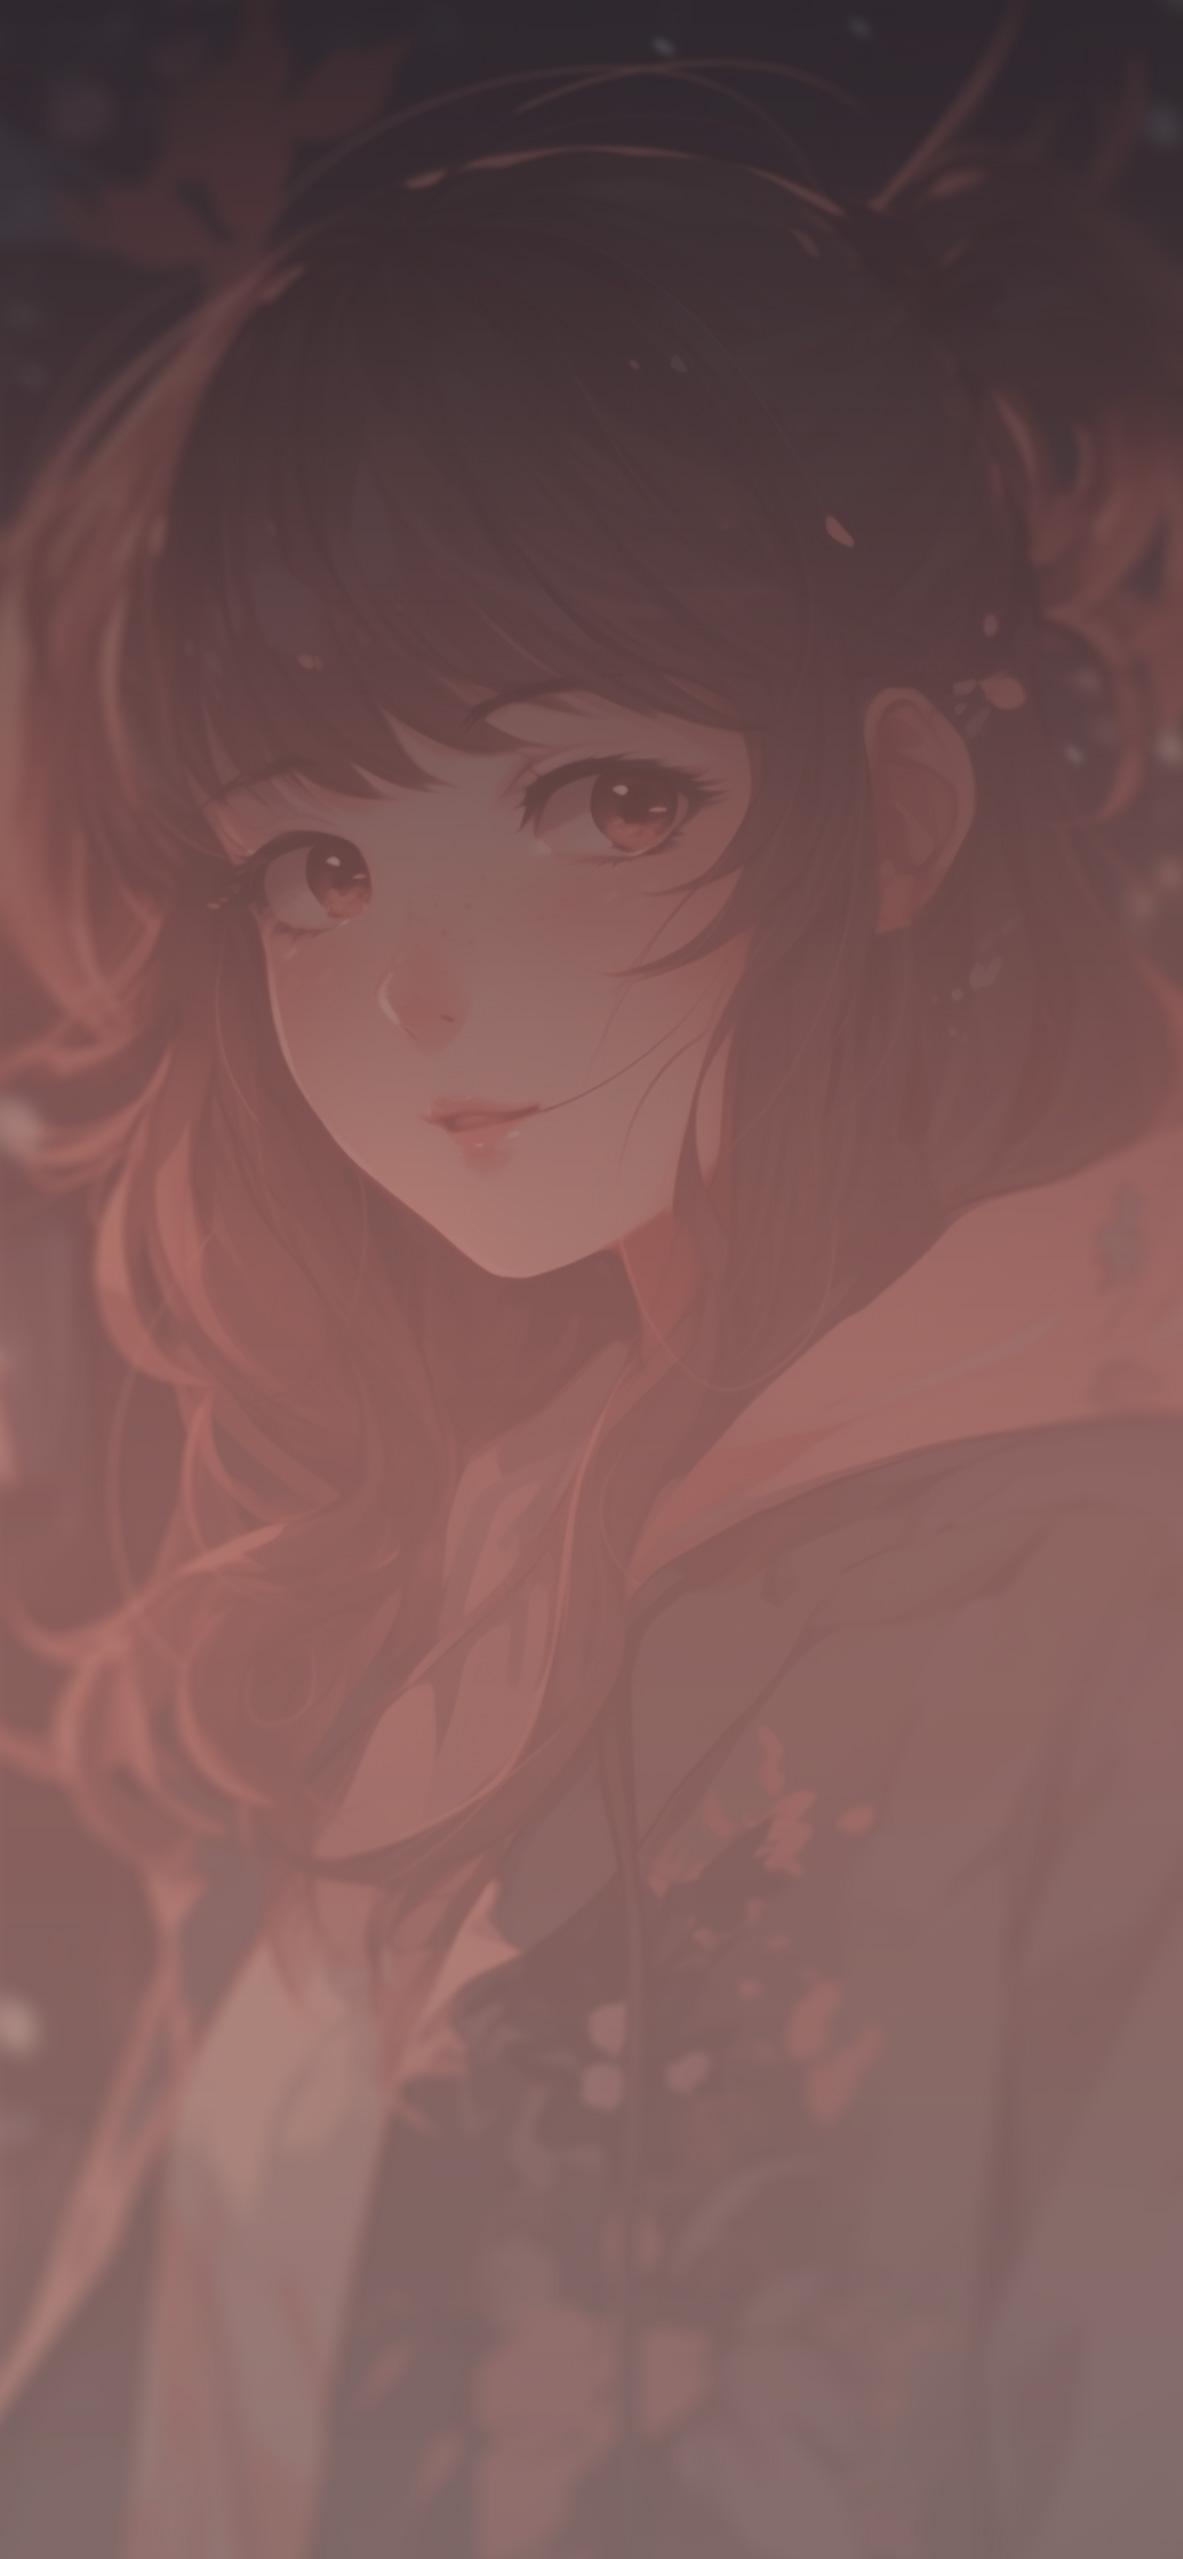 Pretty Anime Girl Art Wallpaper For iPhone